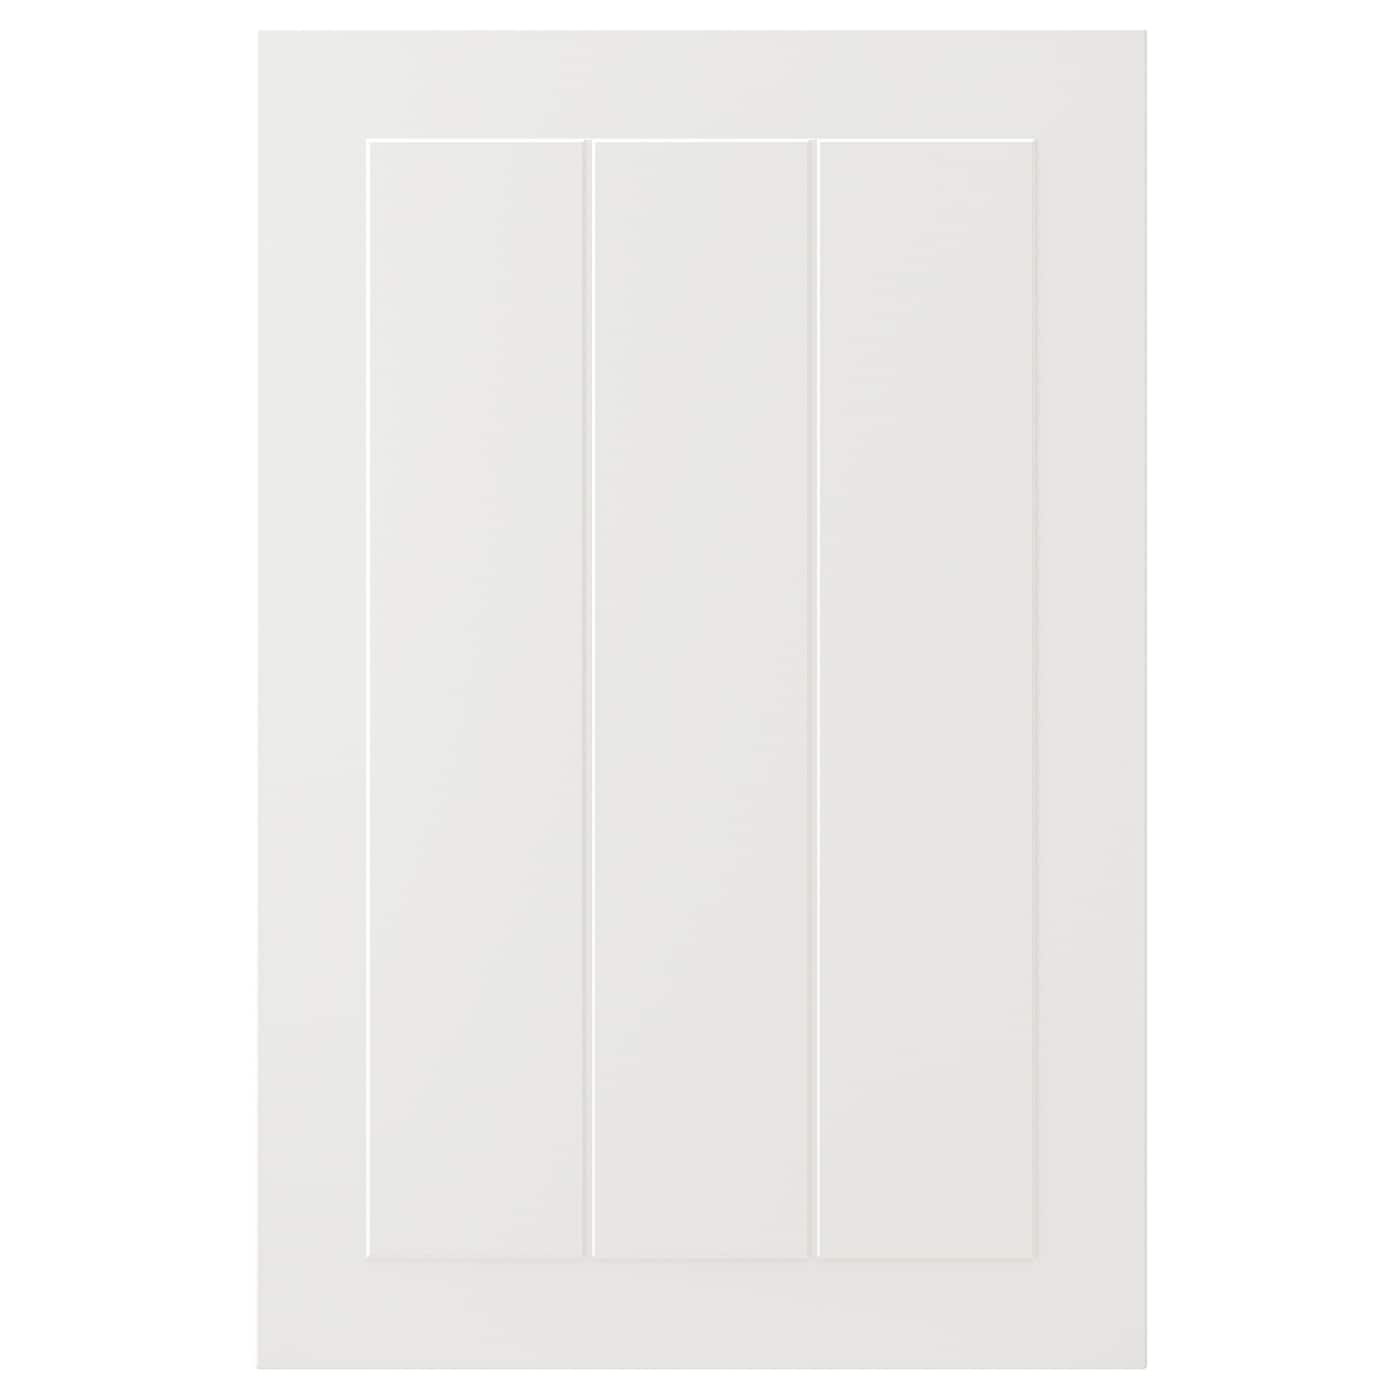 Дверца - IKEA STENSUND, 60х40 см, белый, СТЕНСУНД ИКЕА